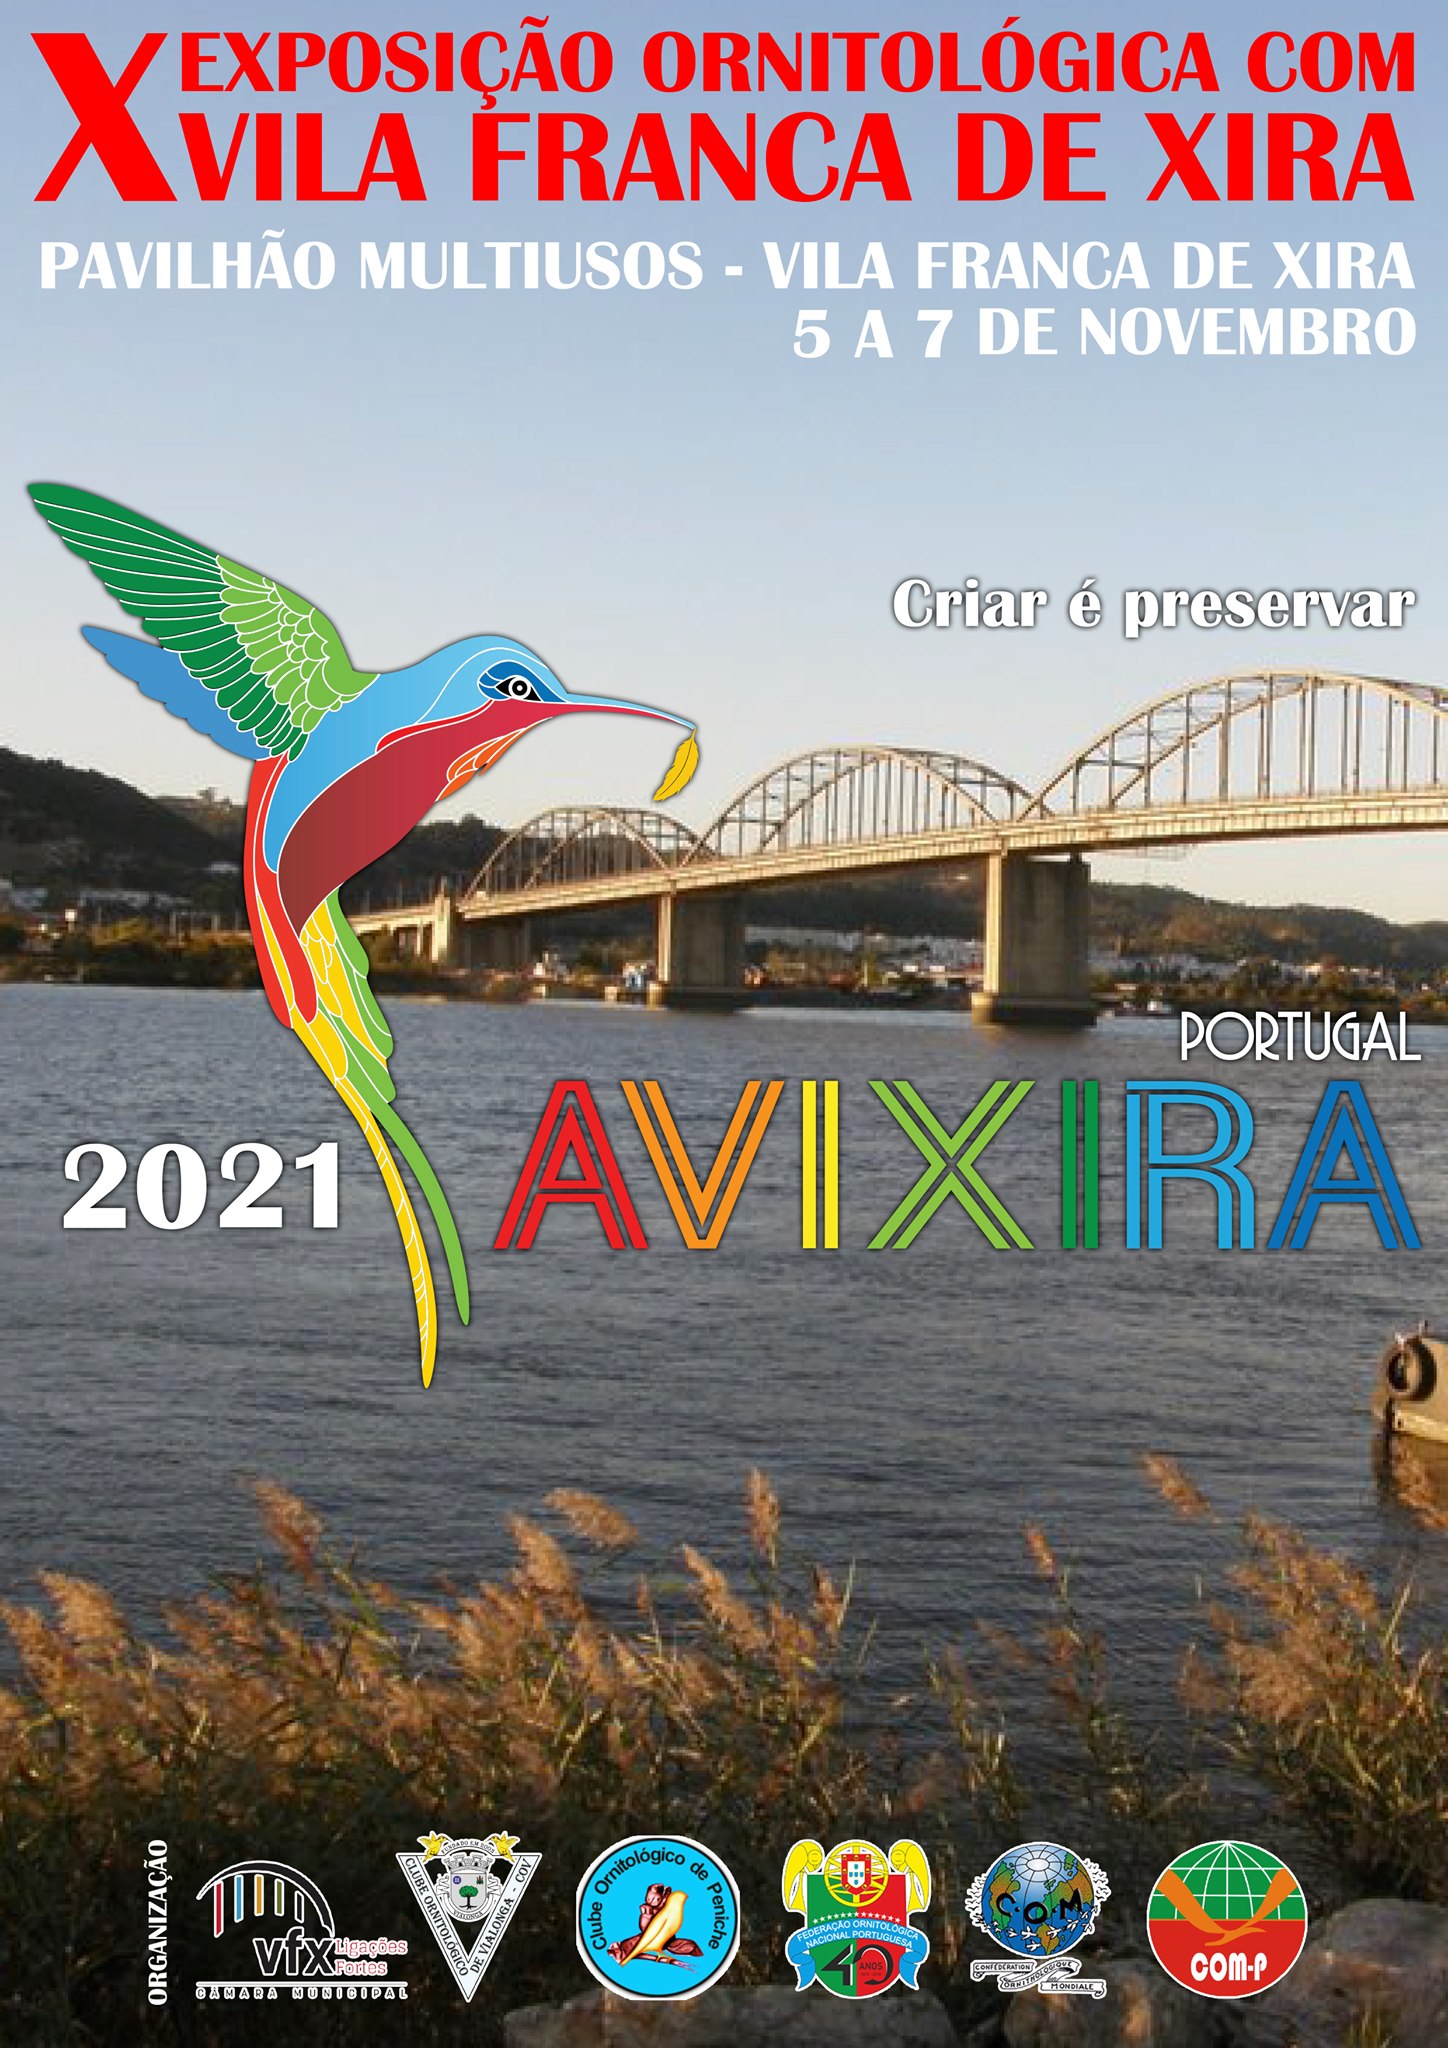 X Exposição Ornitológica COM - Vila Franca de Xira, Portugal, 2021